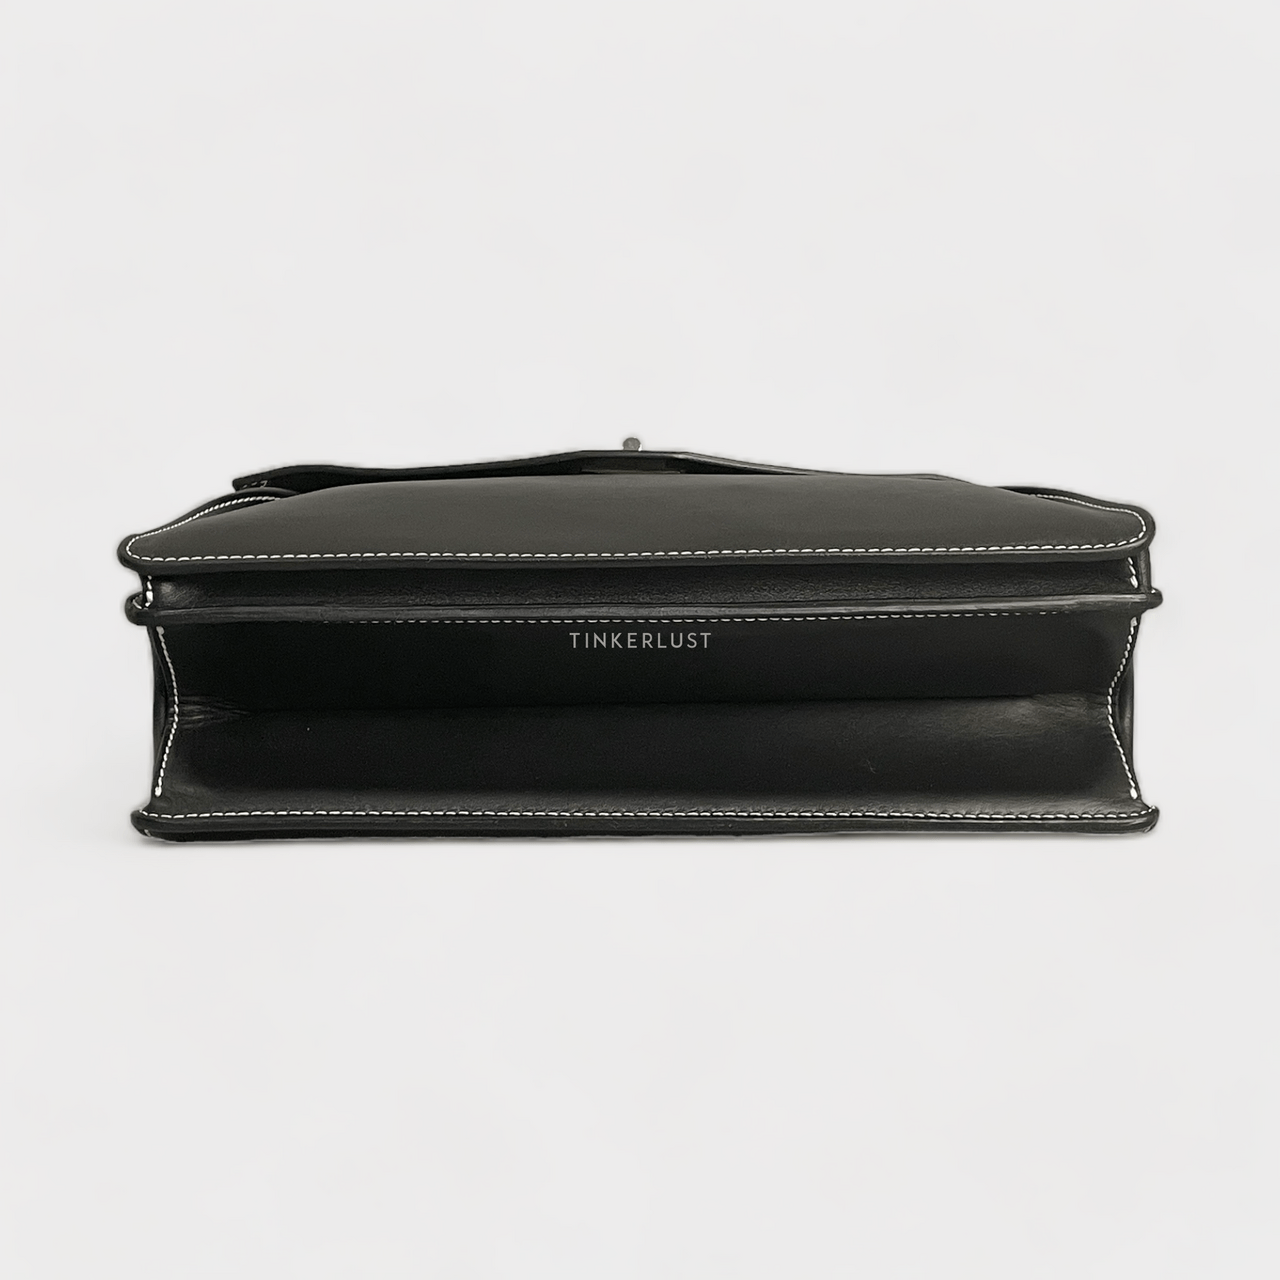 Proenza Schouler Leather Hava Top Handle Black Bag